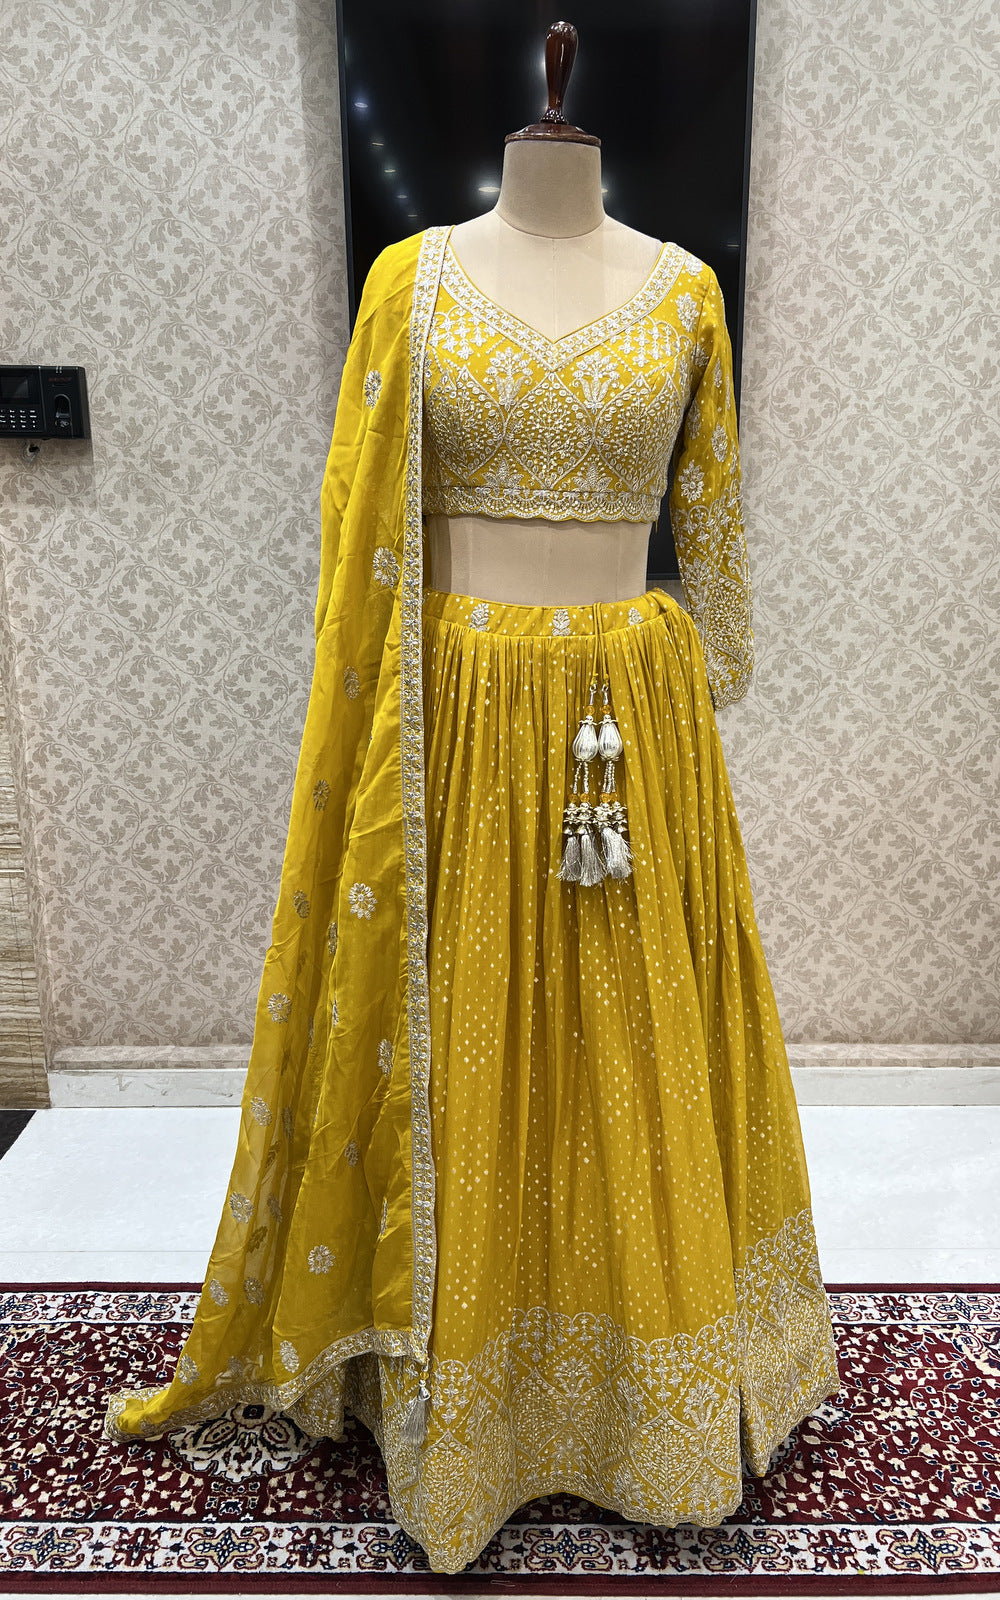 Urvashi Rautela dressed like bride, looks beautiful in Golden Lehenga -  परिणीति चोपड़ा के बाद उर्वशी रौतेला का ब्राइडल लुक वायरल, दीवाने हुए फैंस |  Jansatta